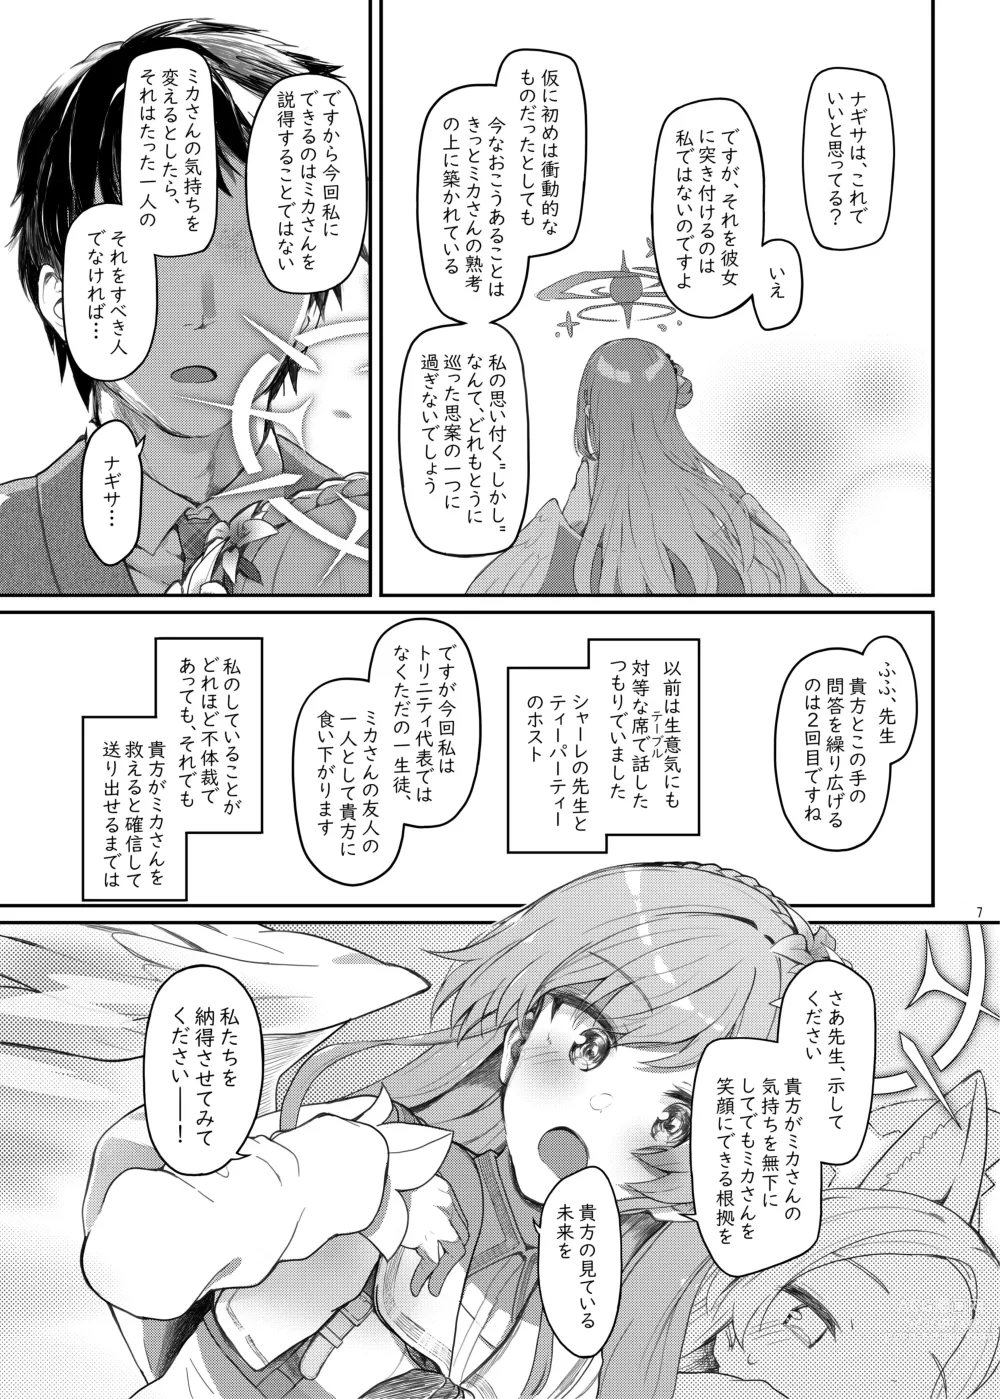 Page 6 of doujinshi Tenshi de Warui Ko DEAREST